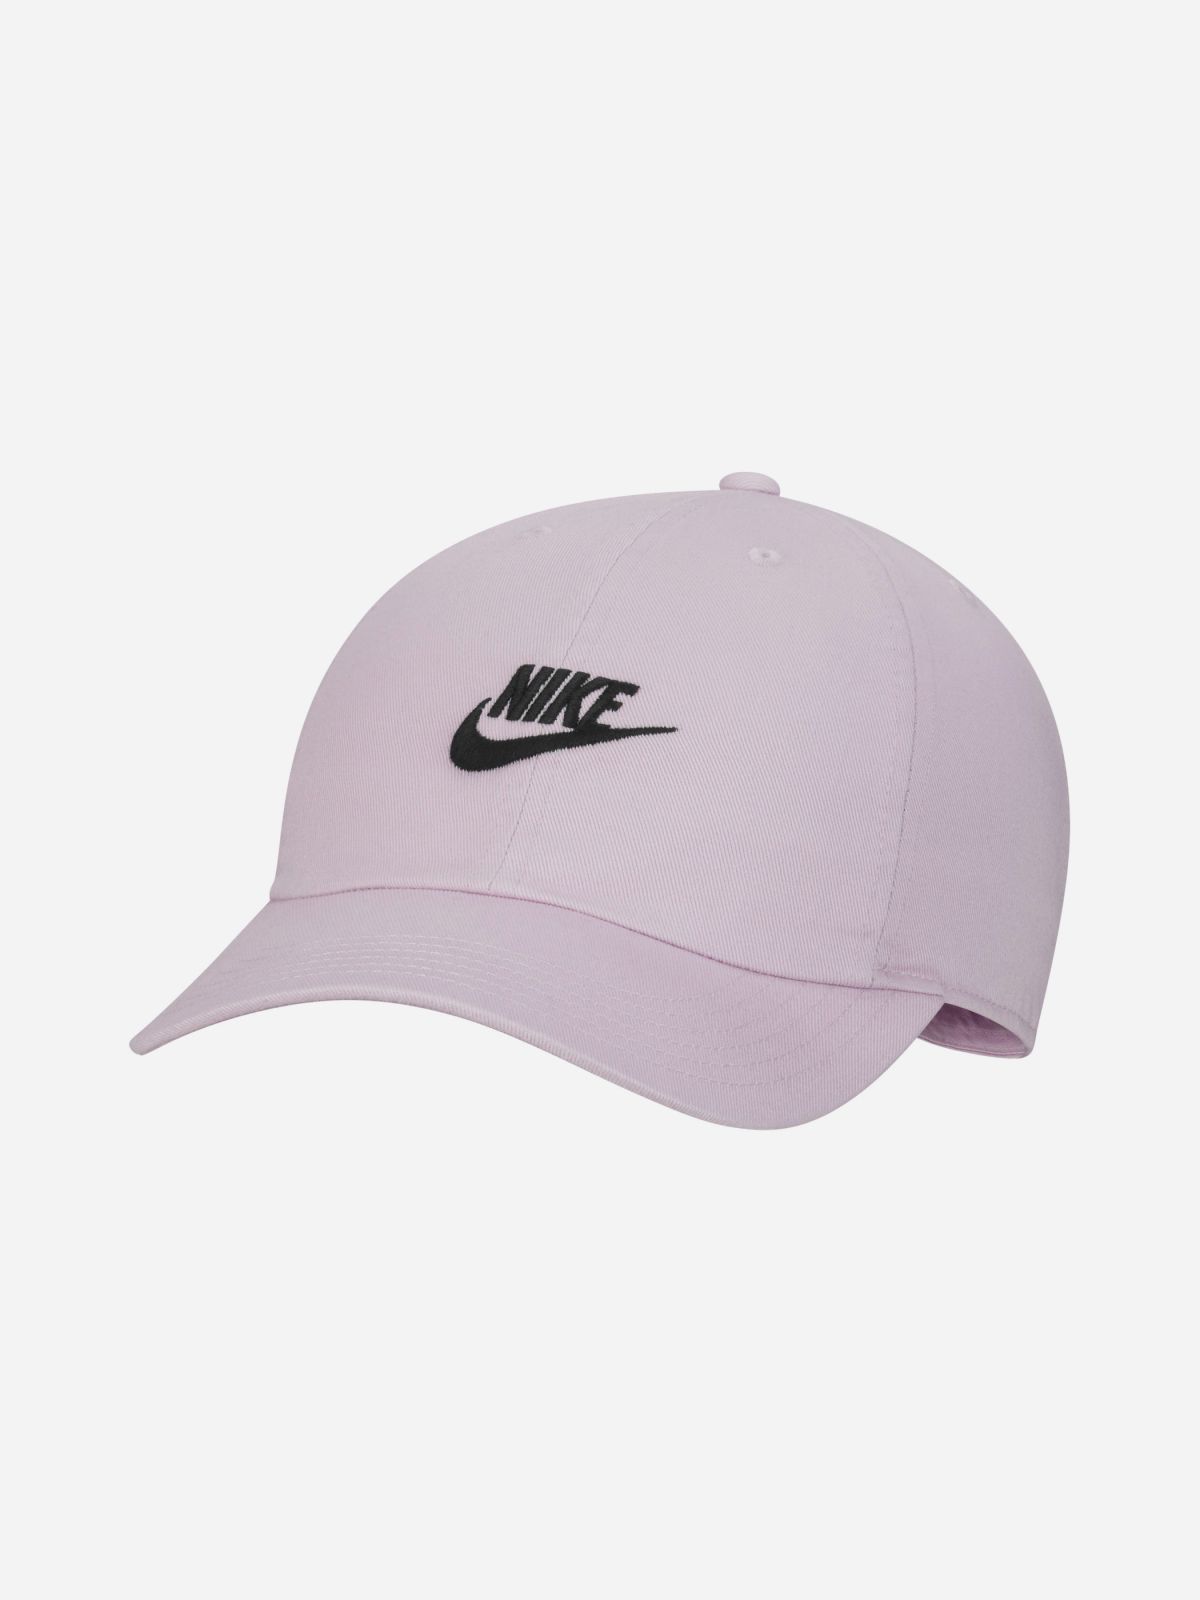  כובע מצחיה עם הדפס לוגו רקום / נשים של NIKE